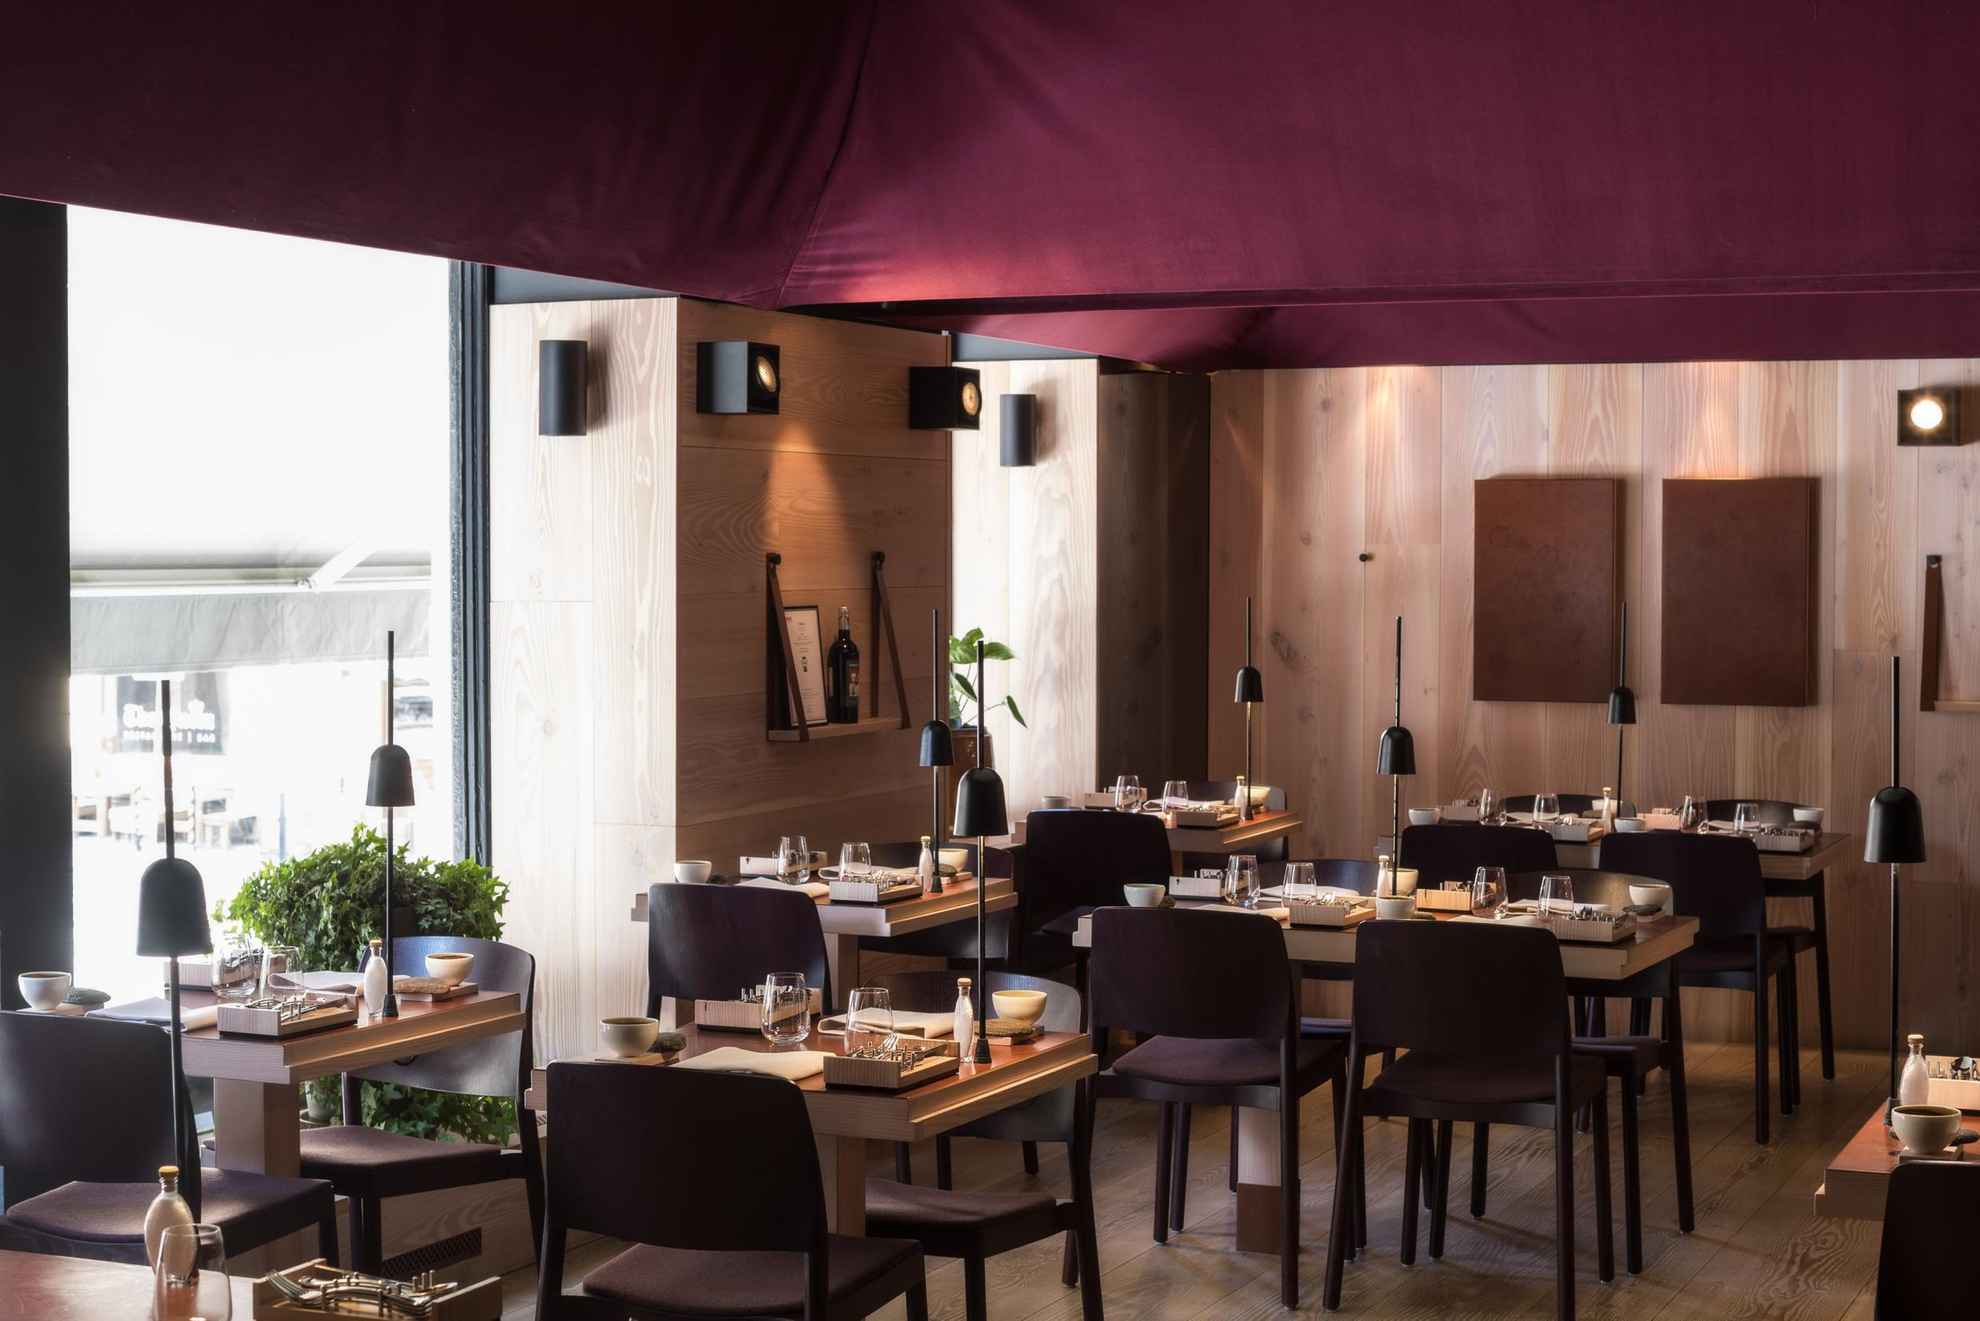 Vue sur l'intérieur d'un restaurant avec des tables dressées, des mur en bois clair et un plafond violet.